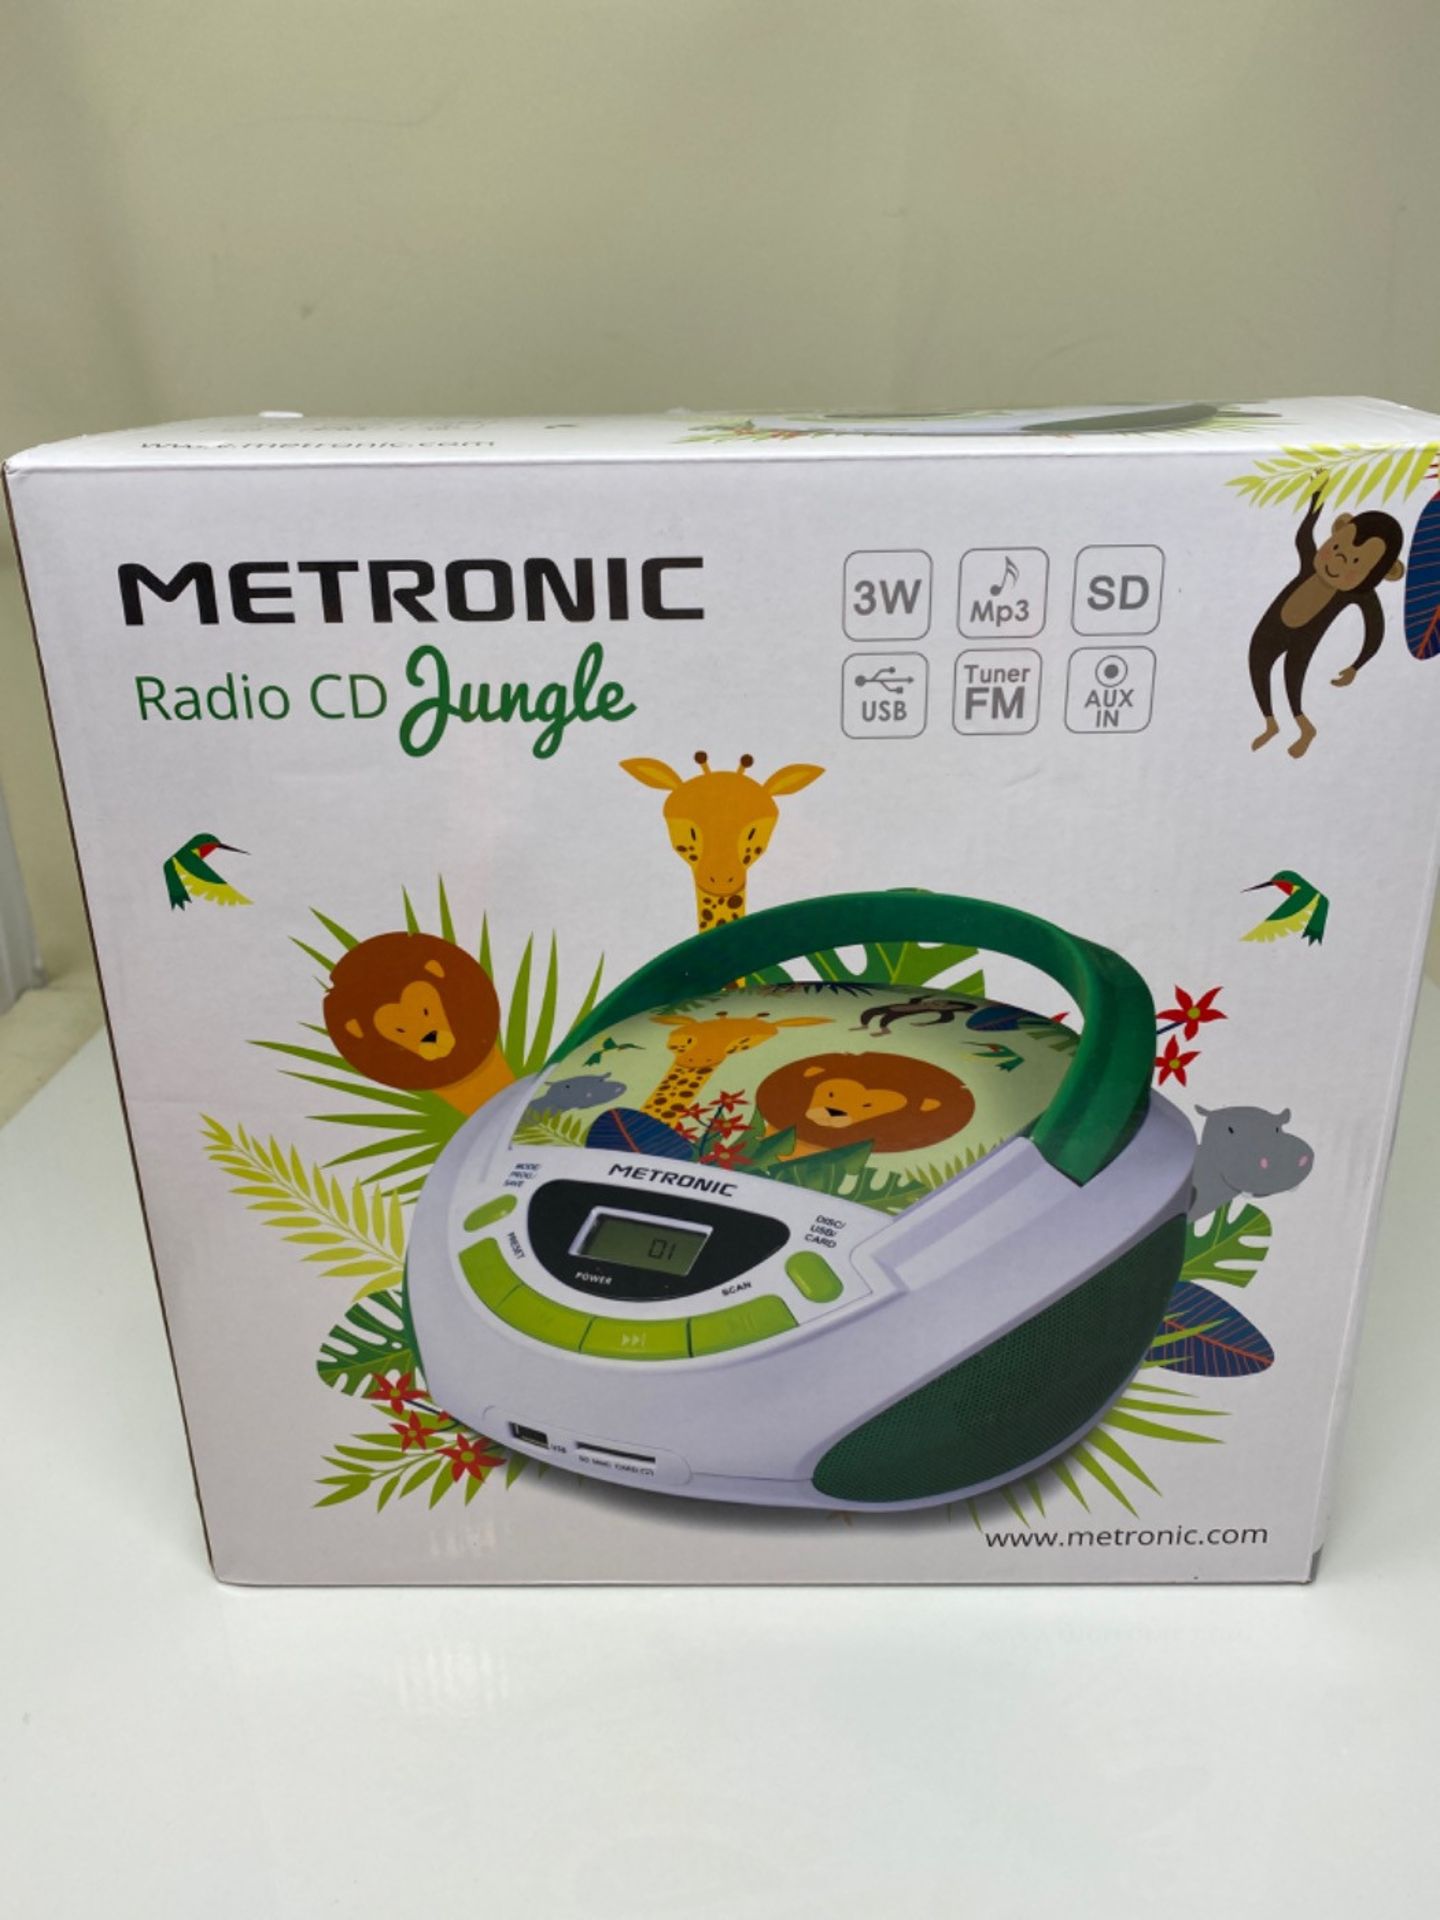 Metronic CD / MP3 Radio green/white - Image 2 of 3